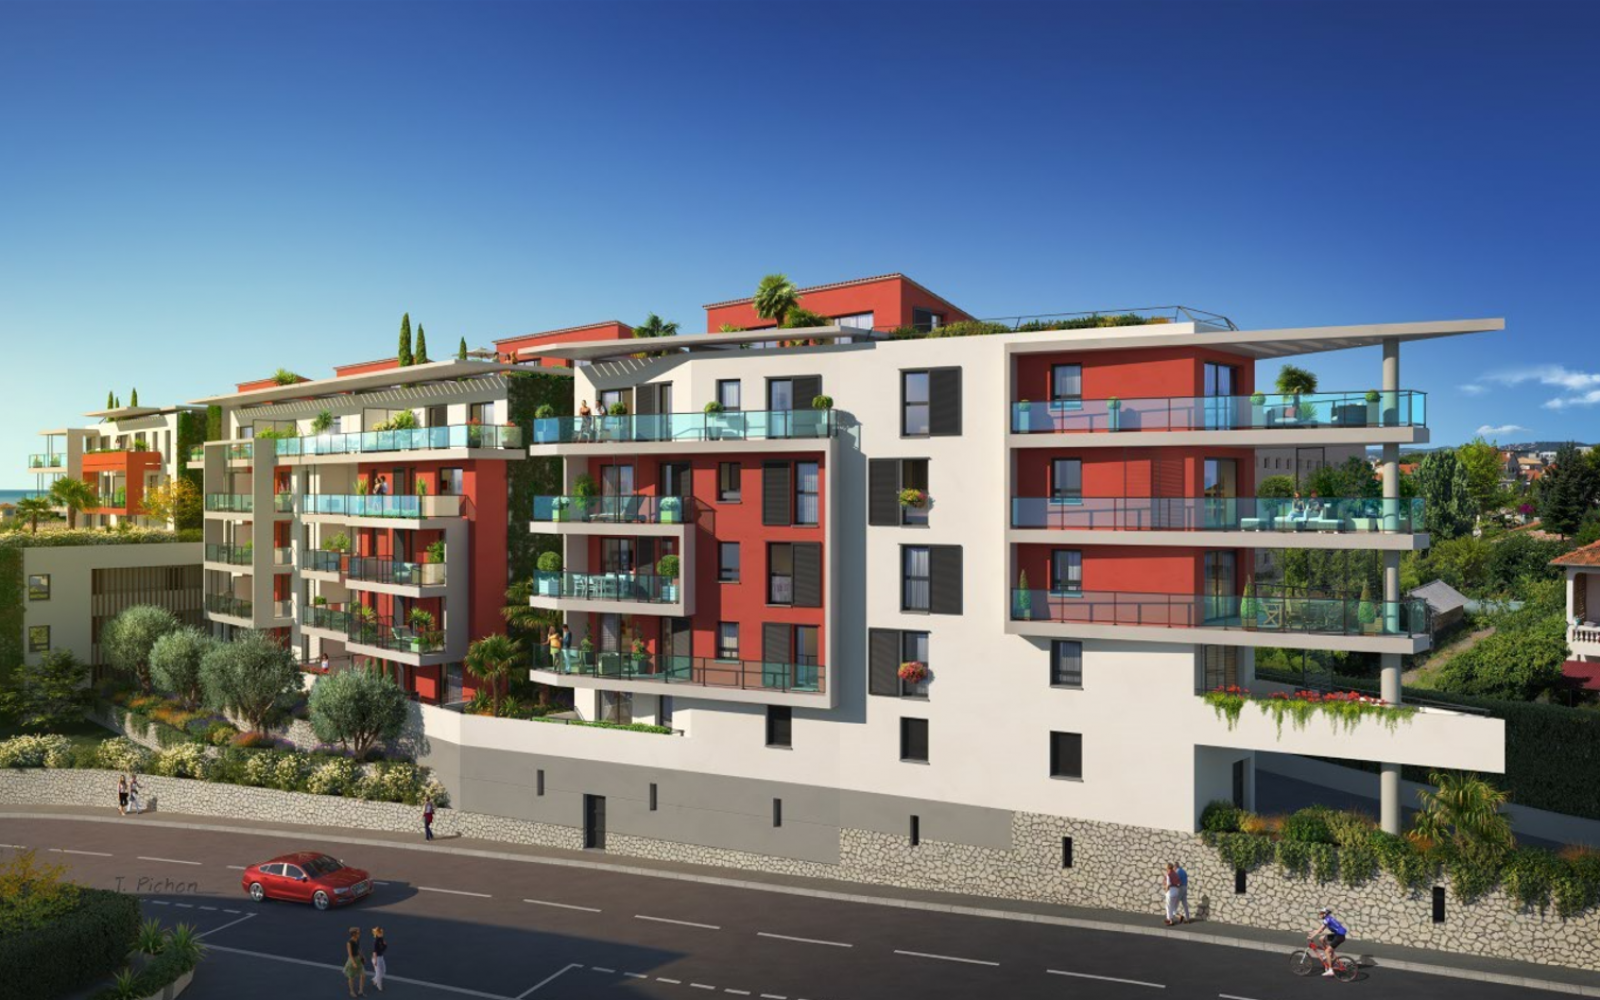 Projet immobilier résidentiel CALLISTEO à Saint Laurent du Var dans les Alpes Maritimes  